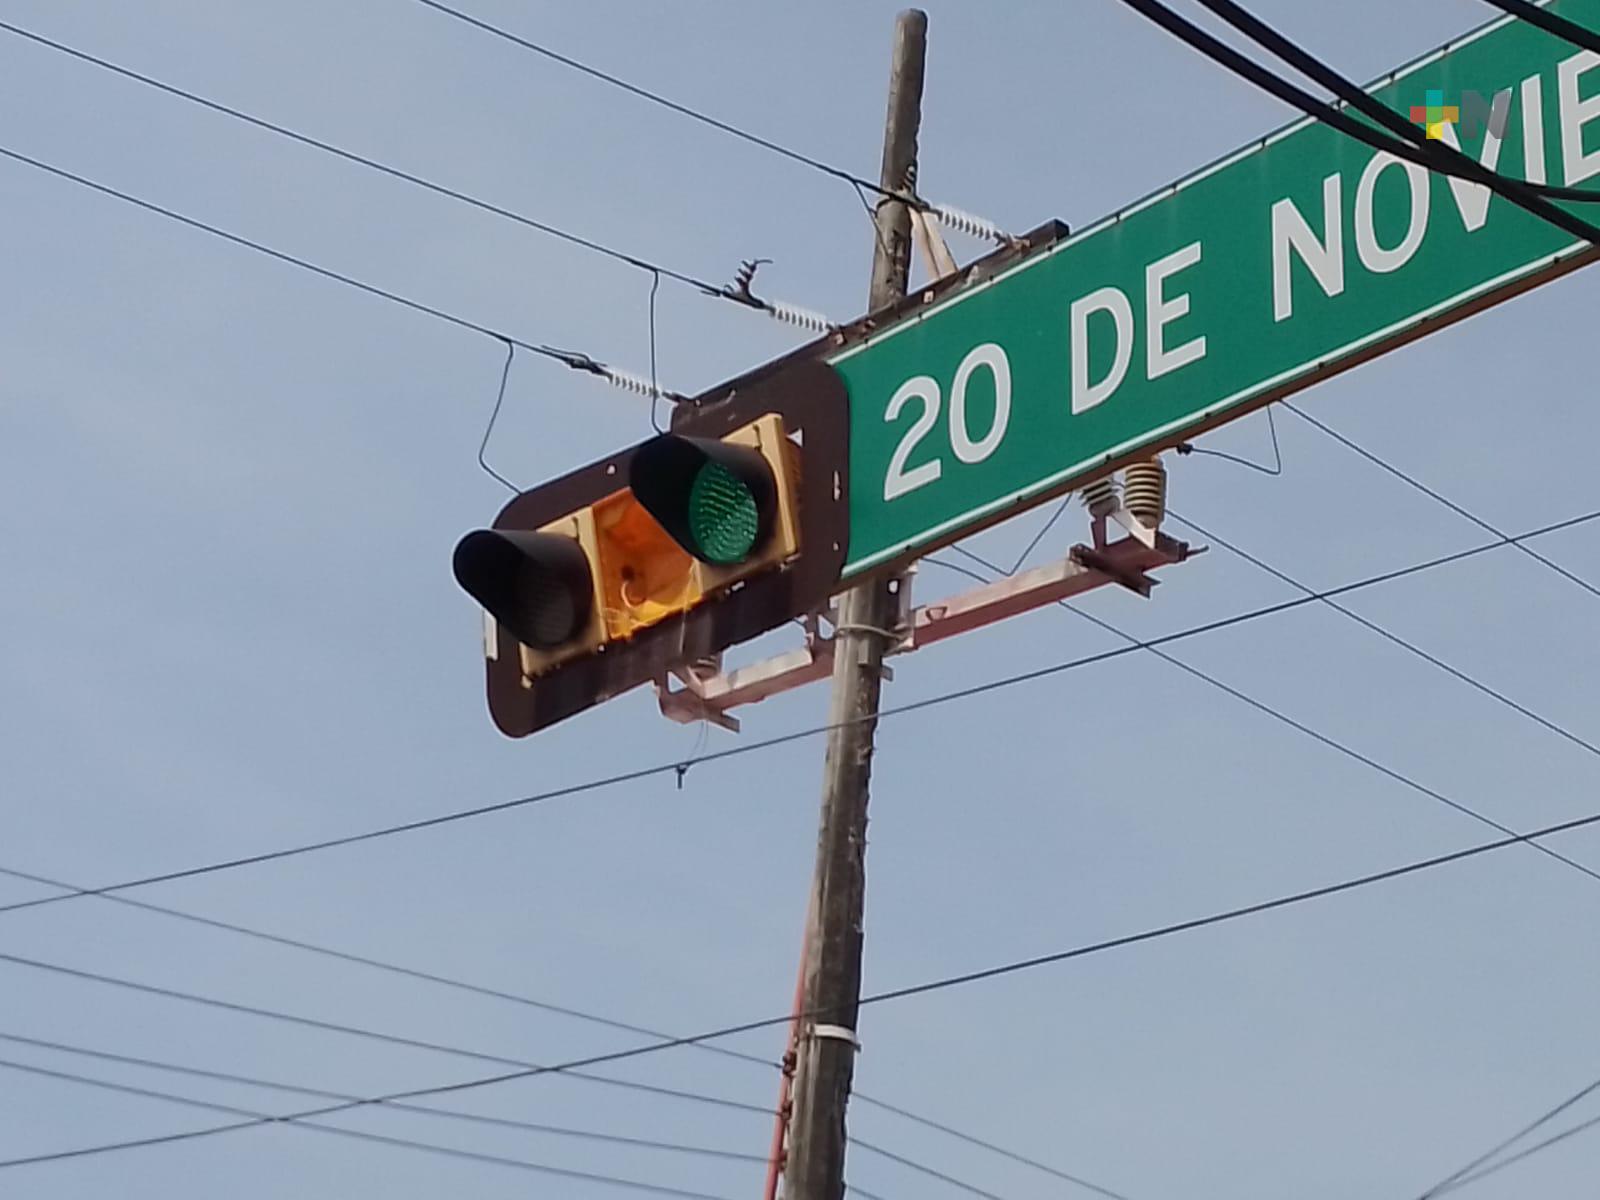 Reportan semáforos en mal estado en distintas zonas de ciudad de Veracruz